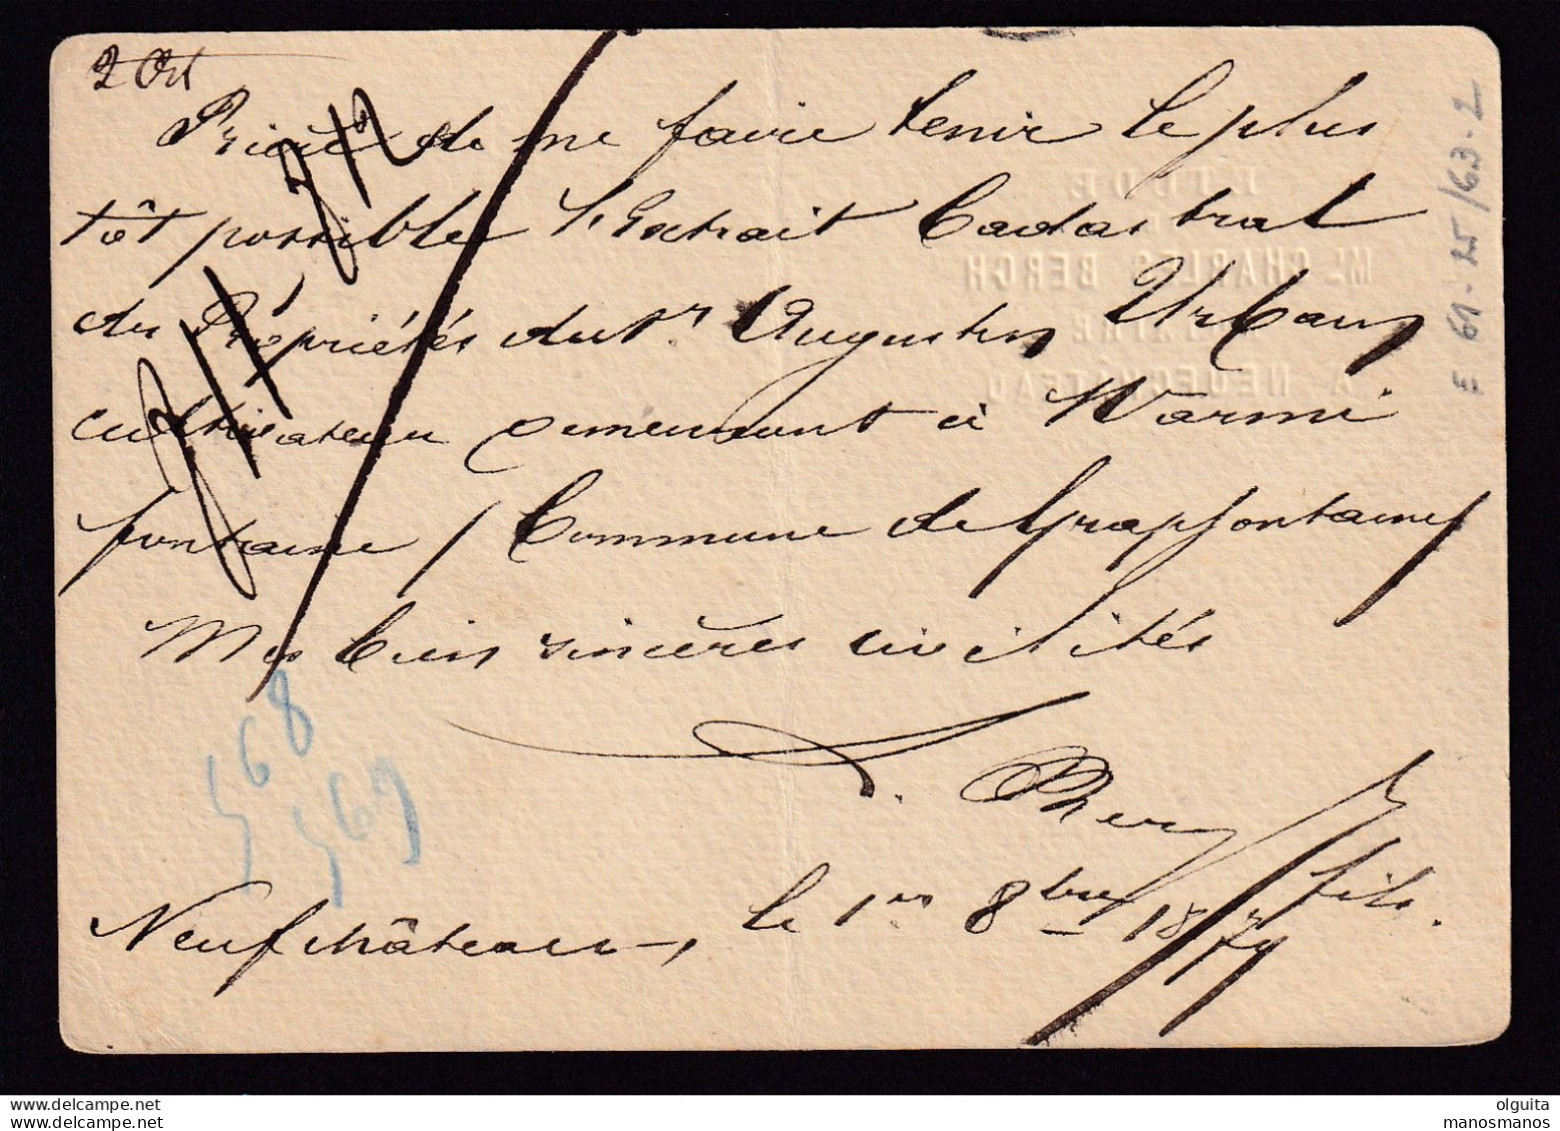 DDEE 359  - Entier Postal Lion Couché NEUFCHATEAU 1879 - Boite Urbaine Parallélogramme MG - Cachet Du Notaire Berch - Rural Post